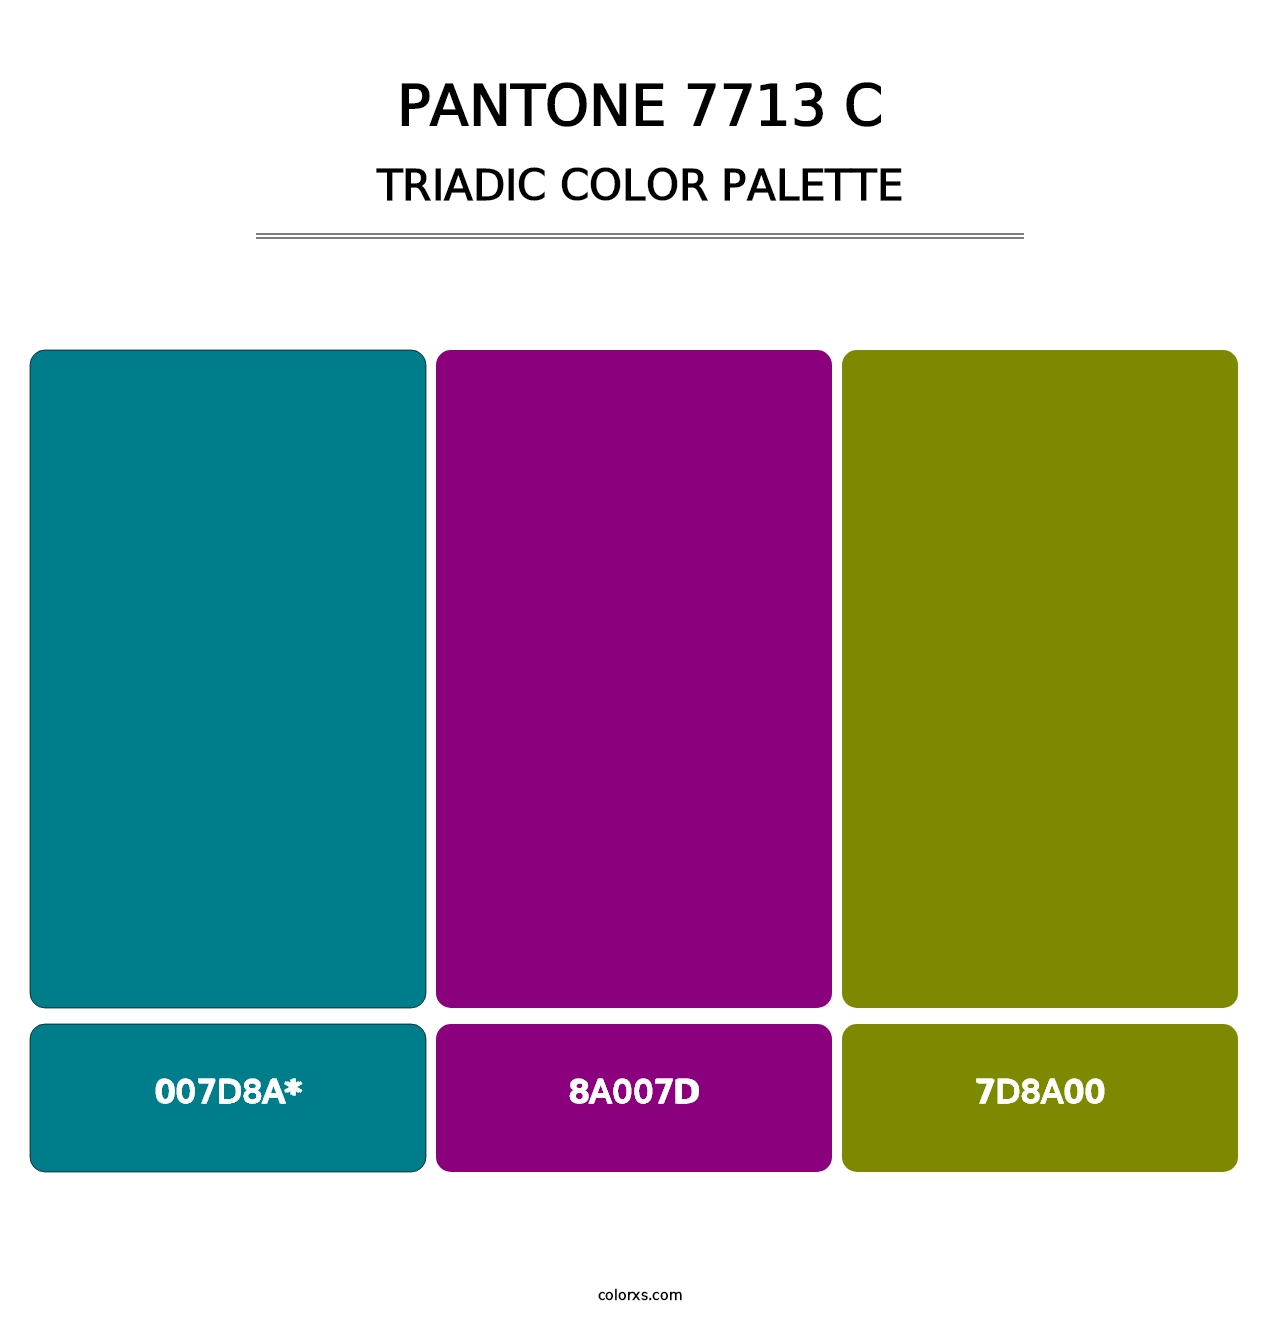 PANTONE 7713 C - Triadic Color Palette